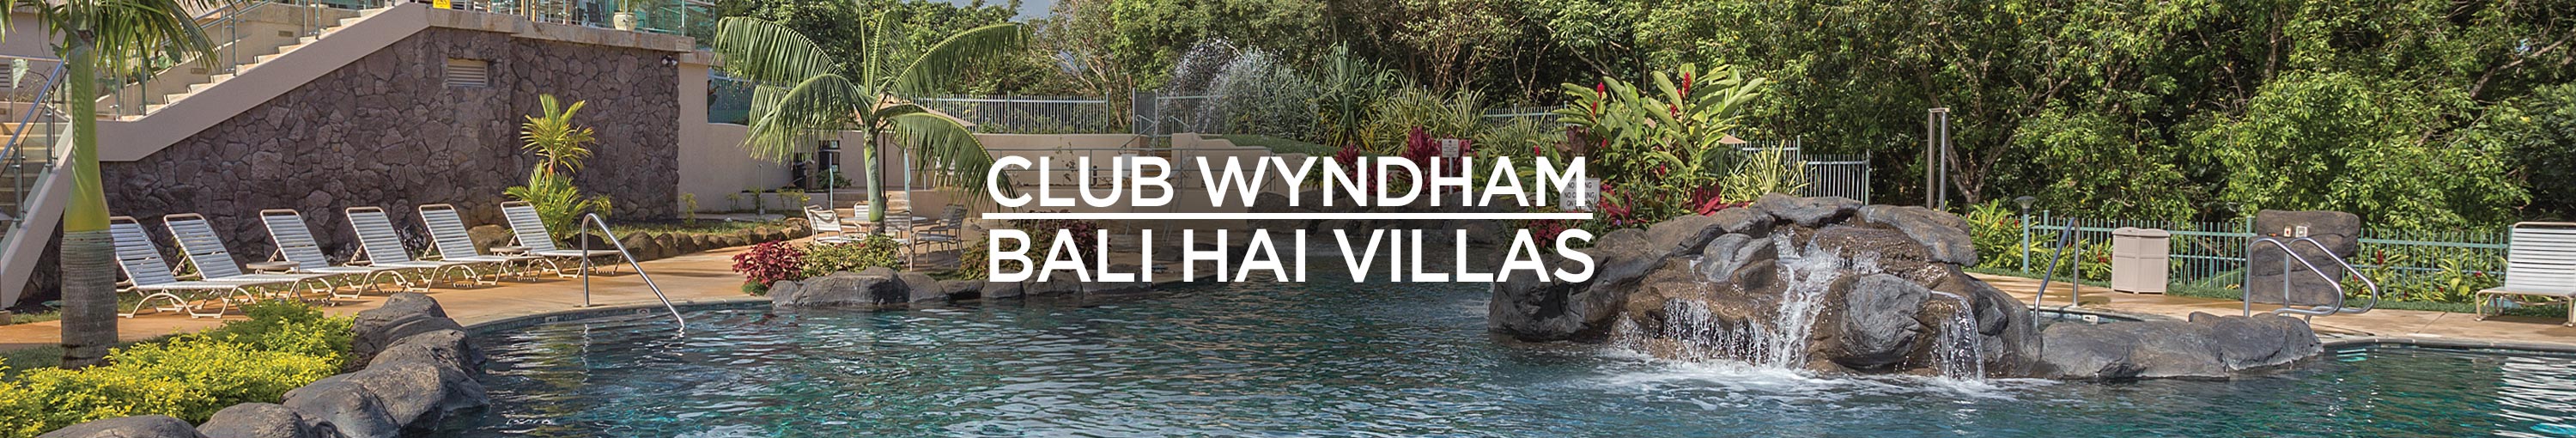 Club Wyndham Bali Hai Villas from Extra Holidays